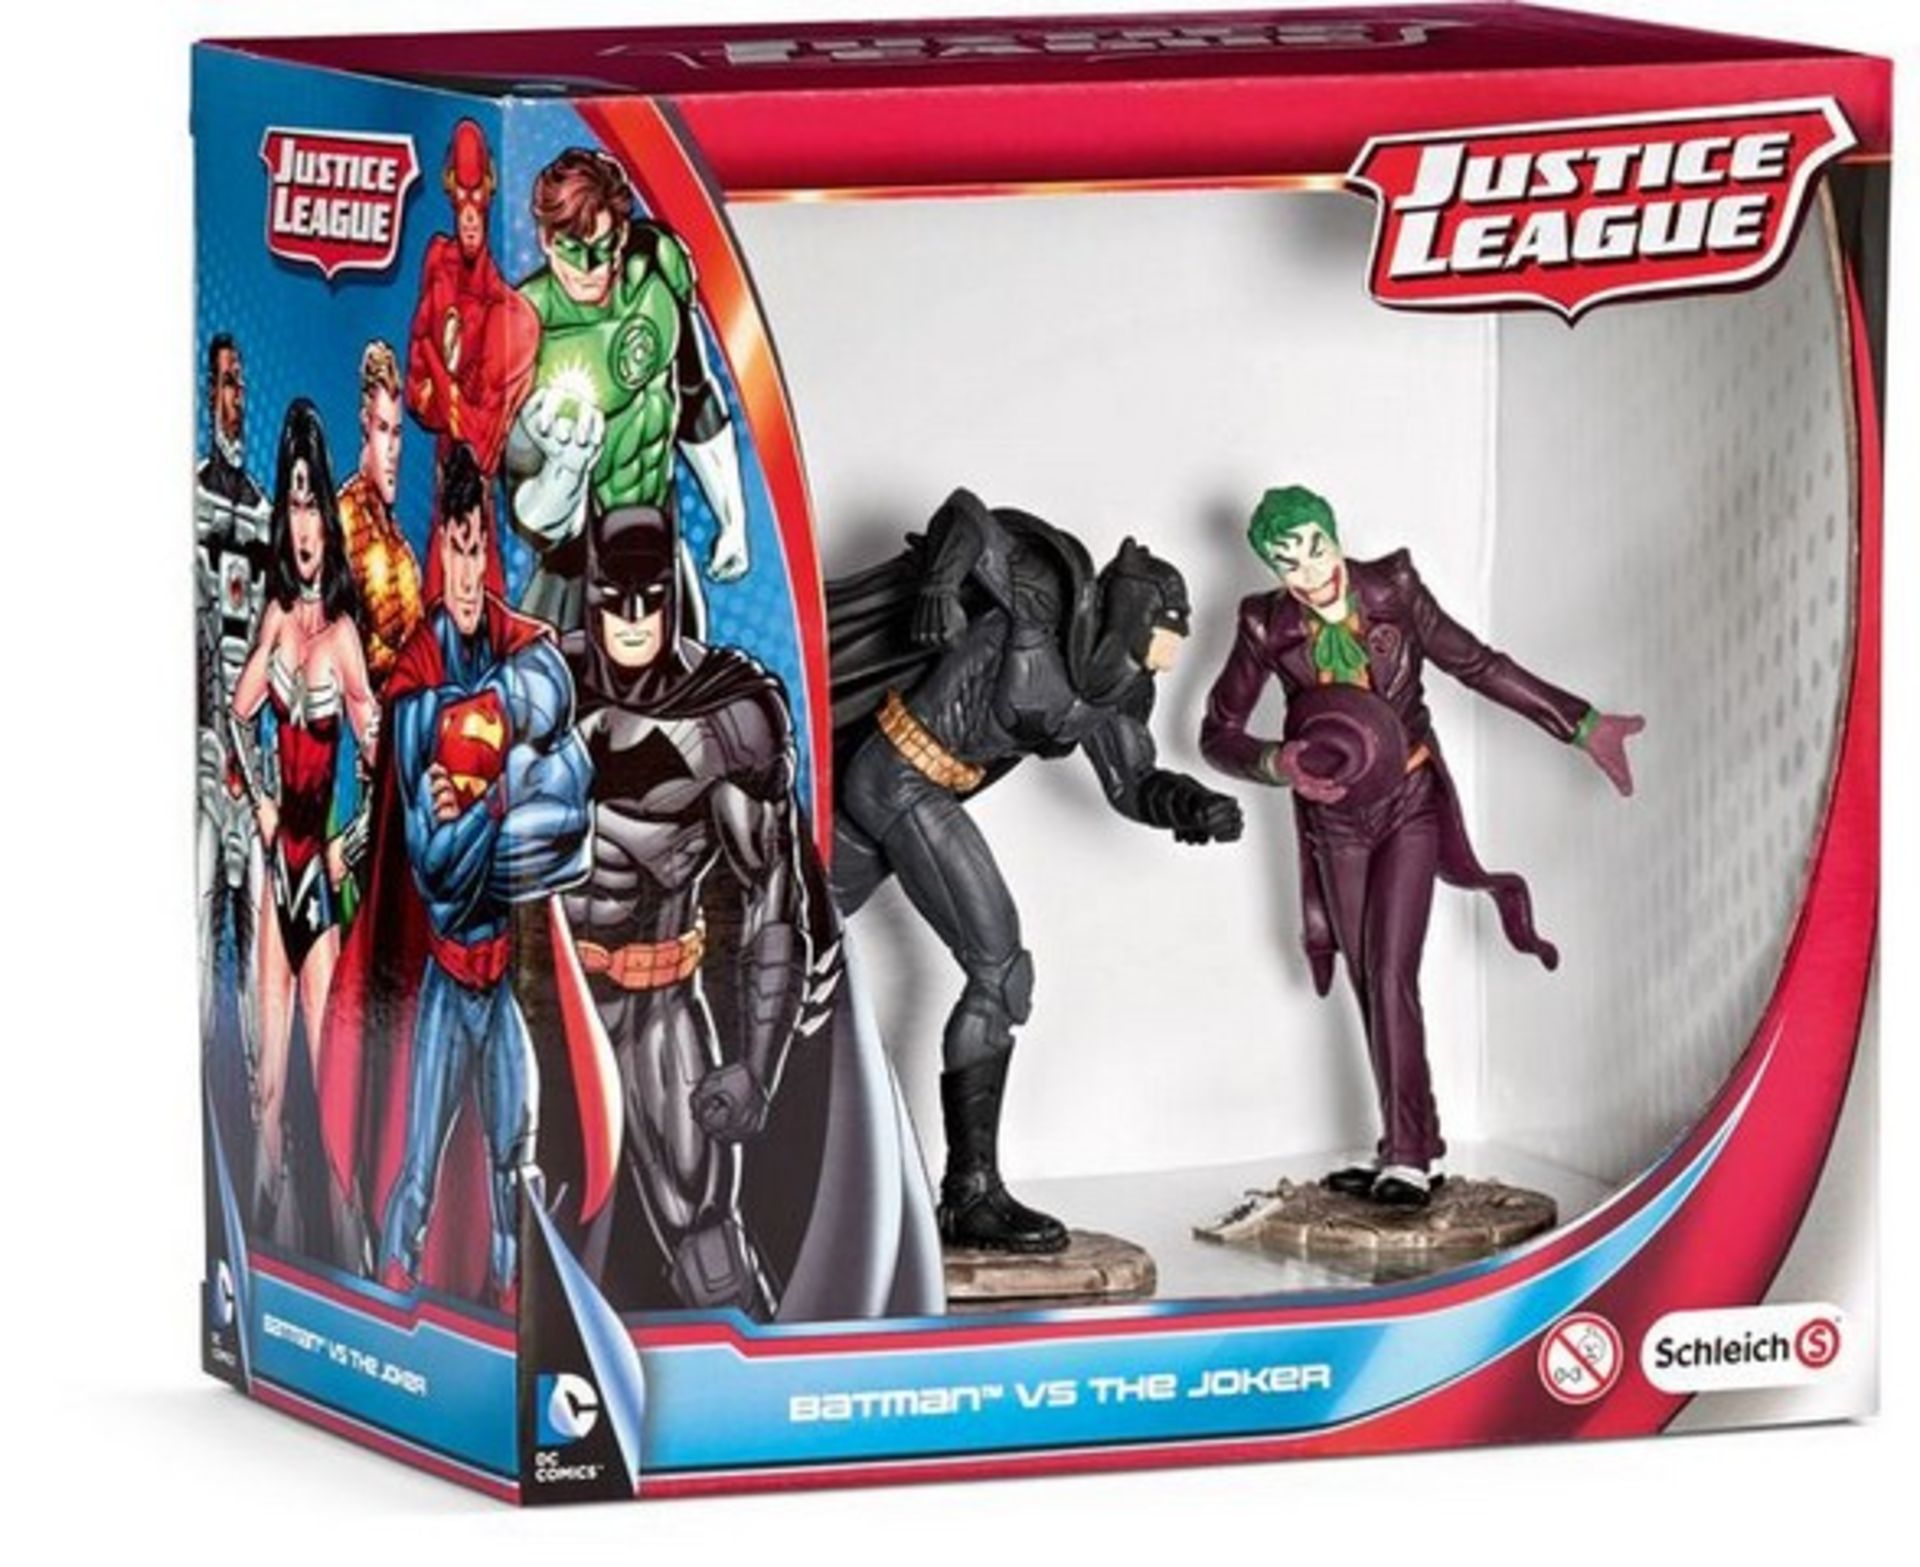 + VAT Brand New Justice League Batman vs Joker Figures eBay Price £15.99